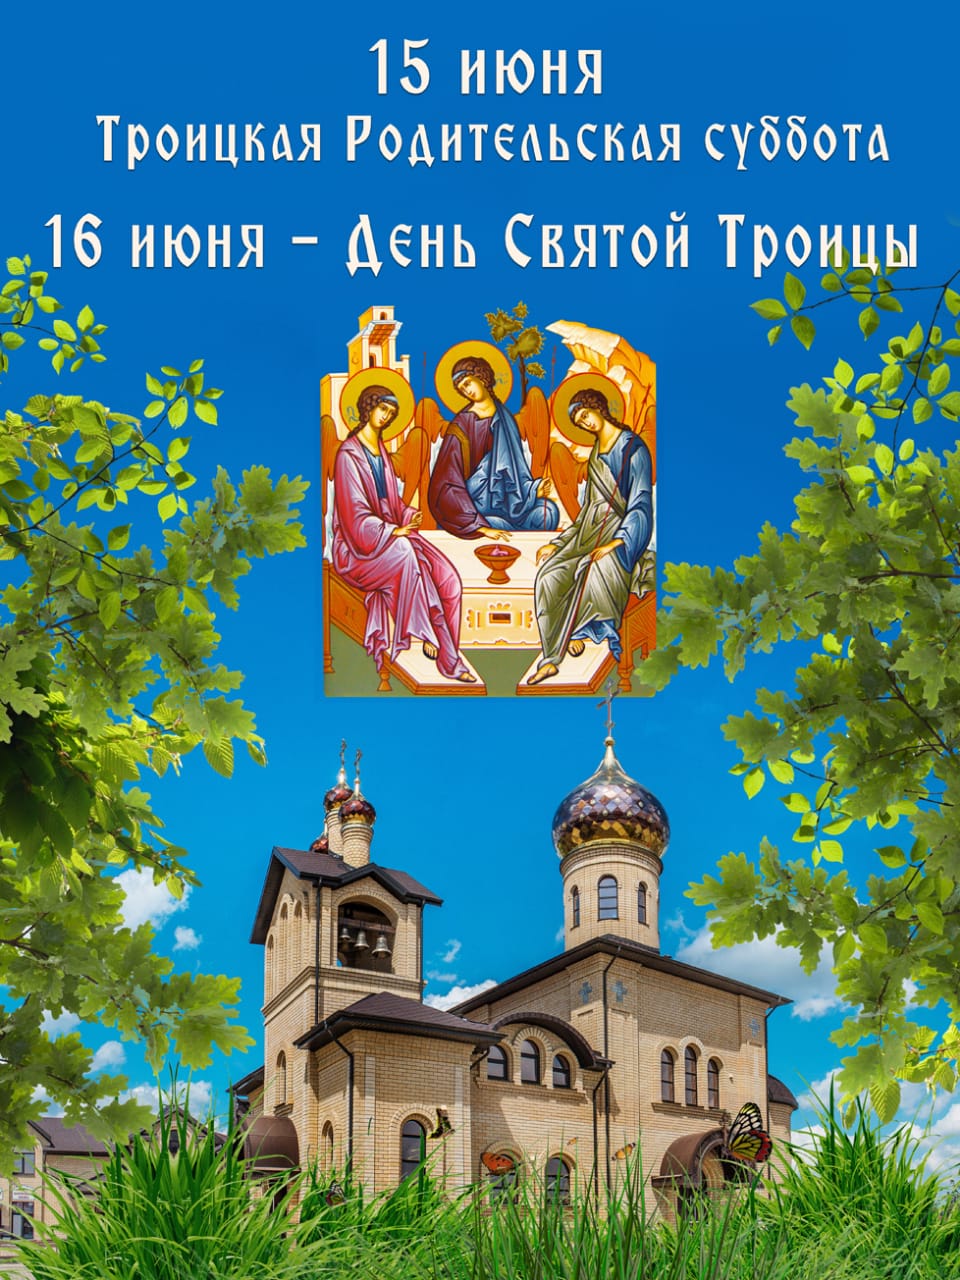 Православные праздники - Троицкая родительская суббота